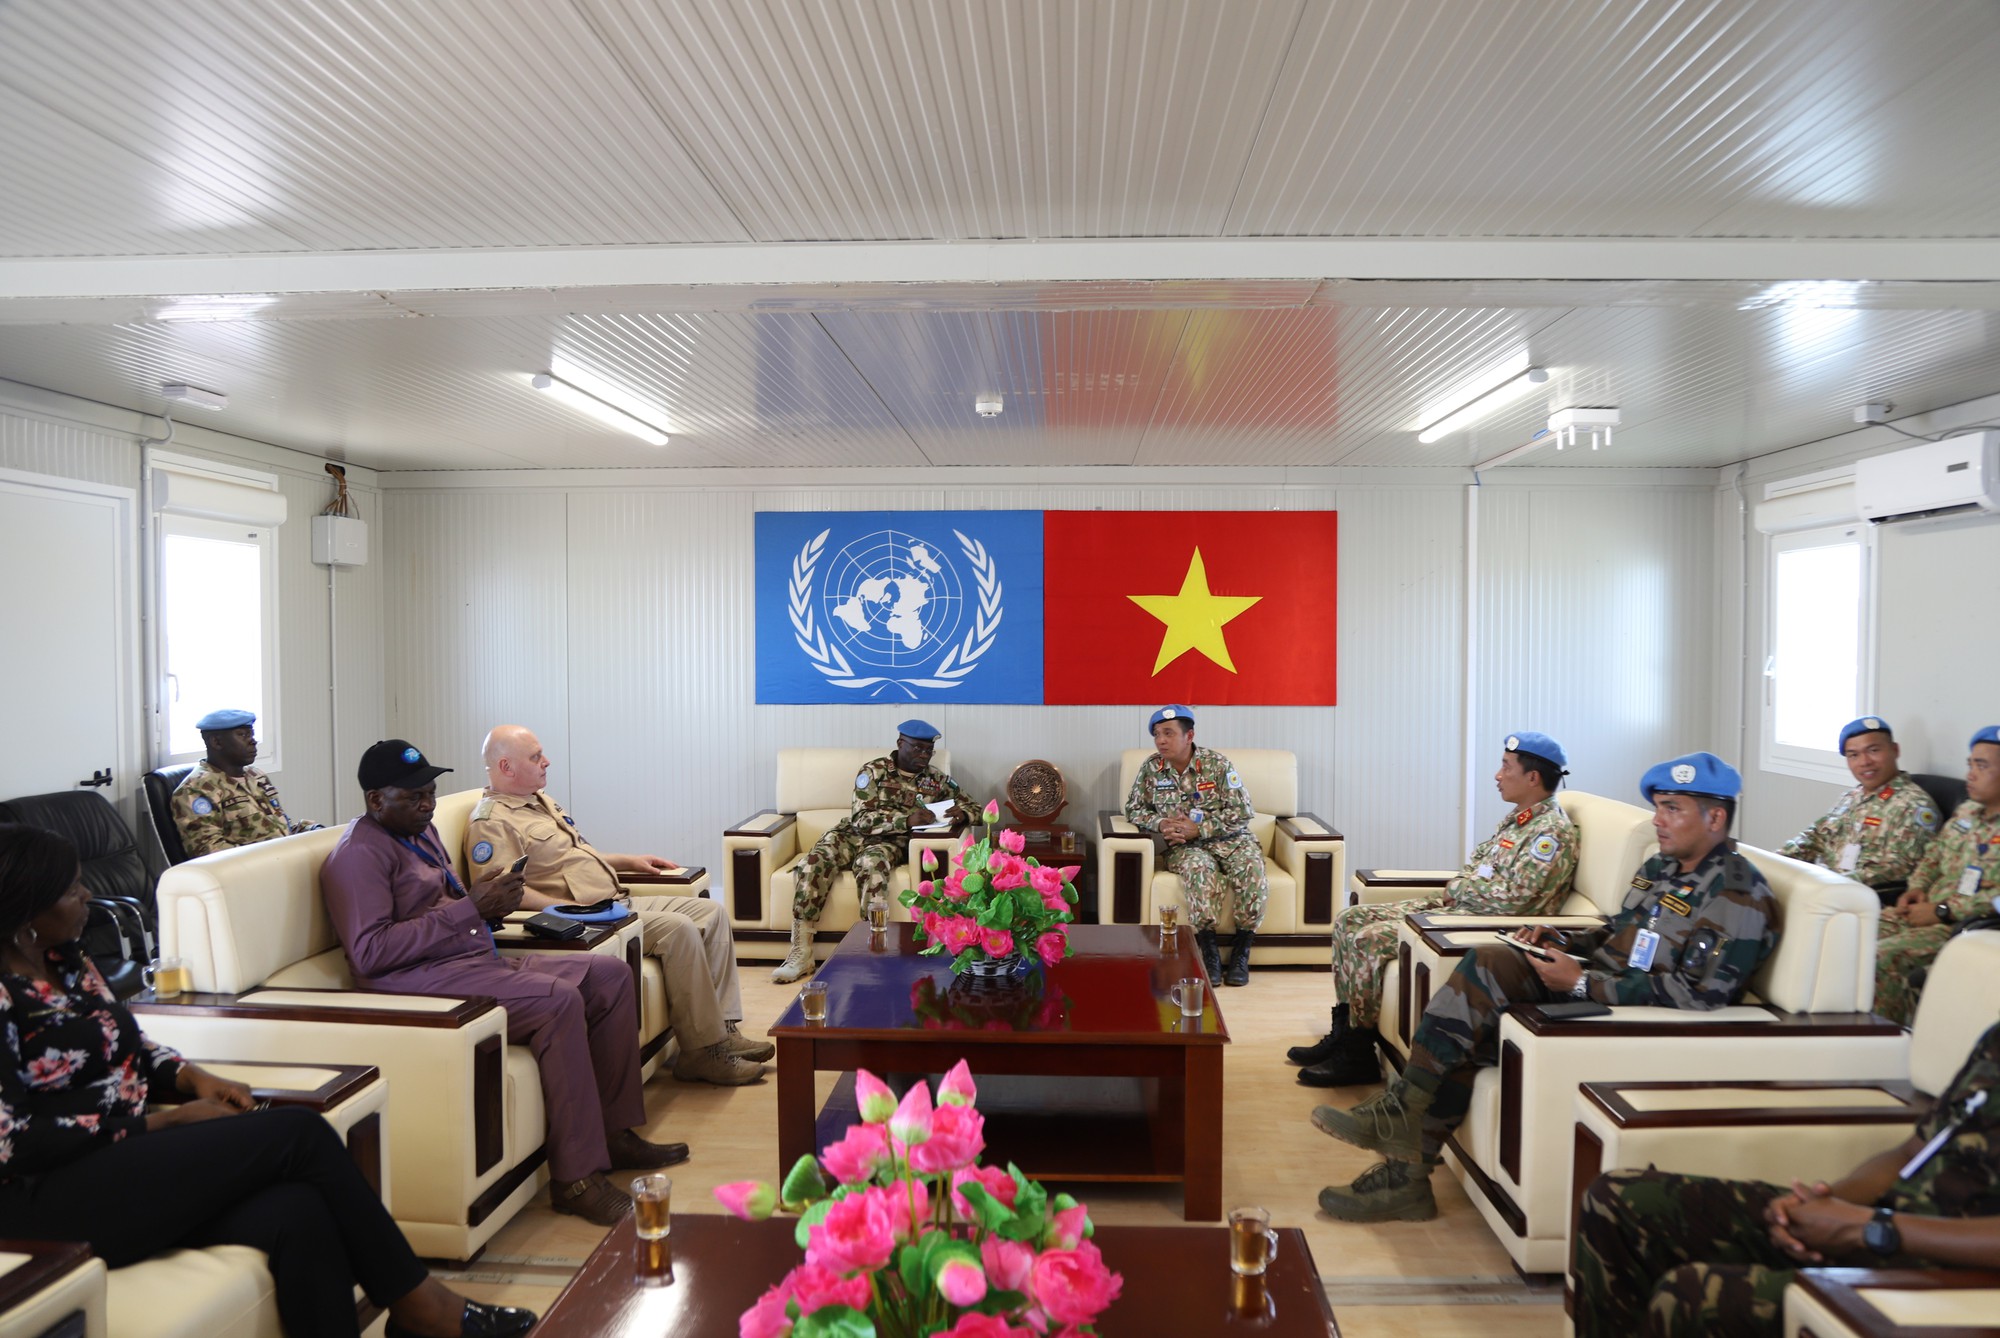 Một ngày với các quân nhân gìn giữ hòa bình tại nơi Đội Công binh Việt Nam đóng quân - Ảnh 3.